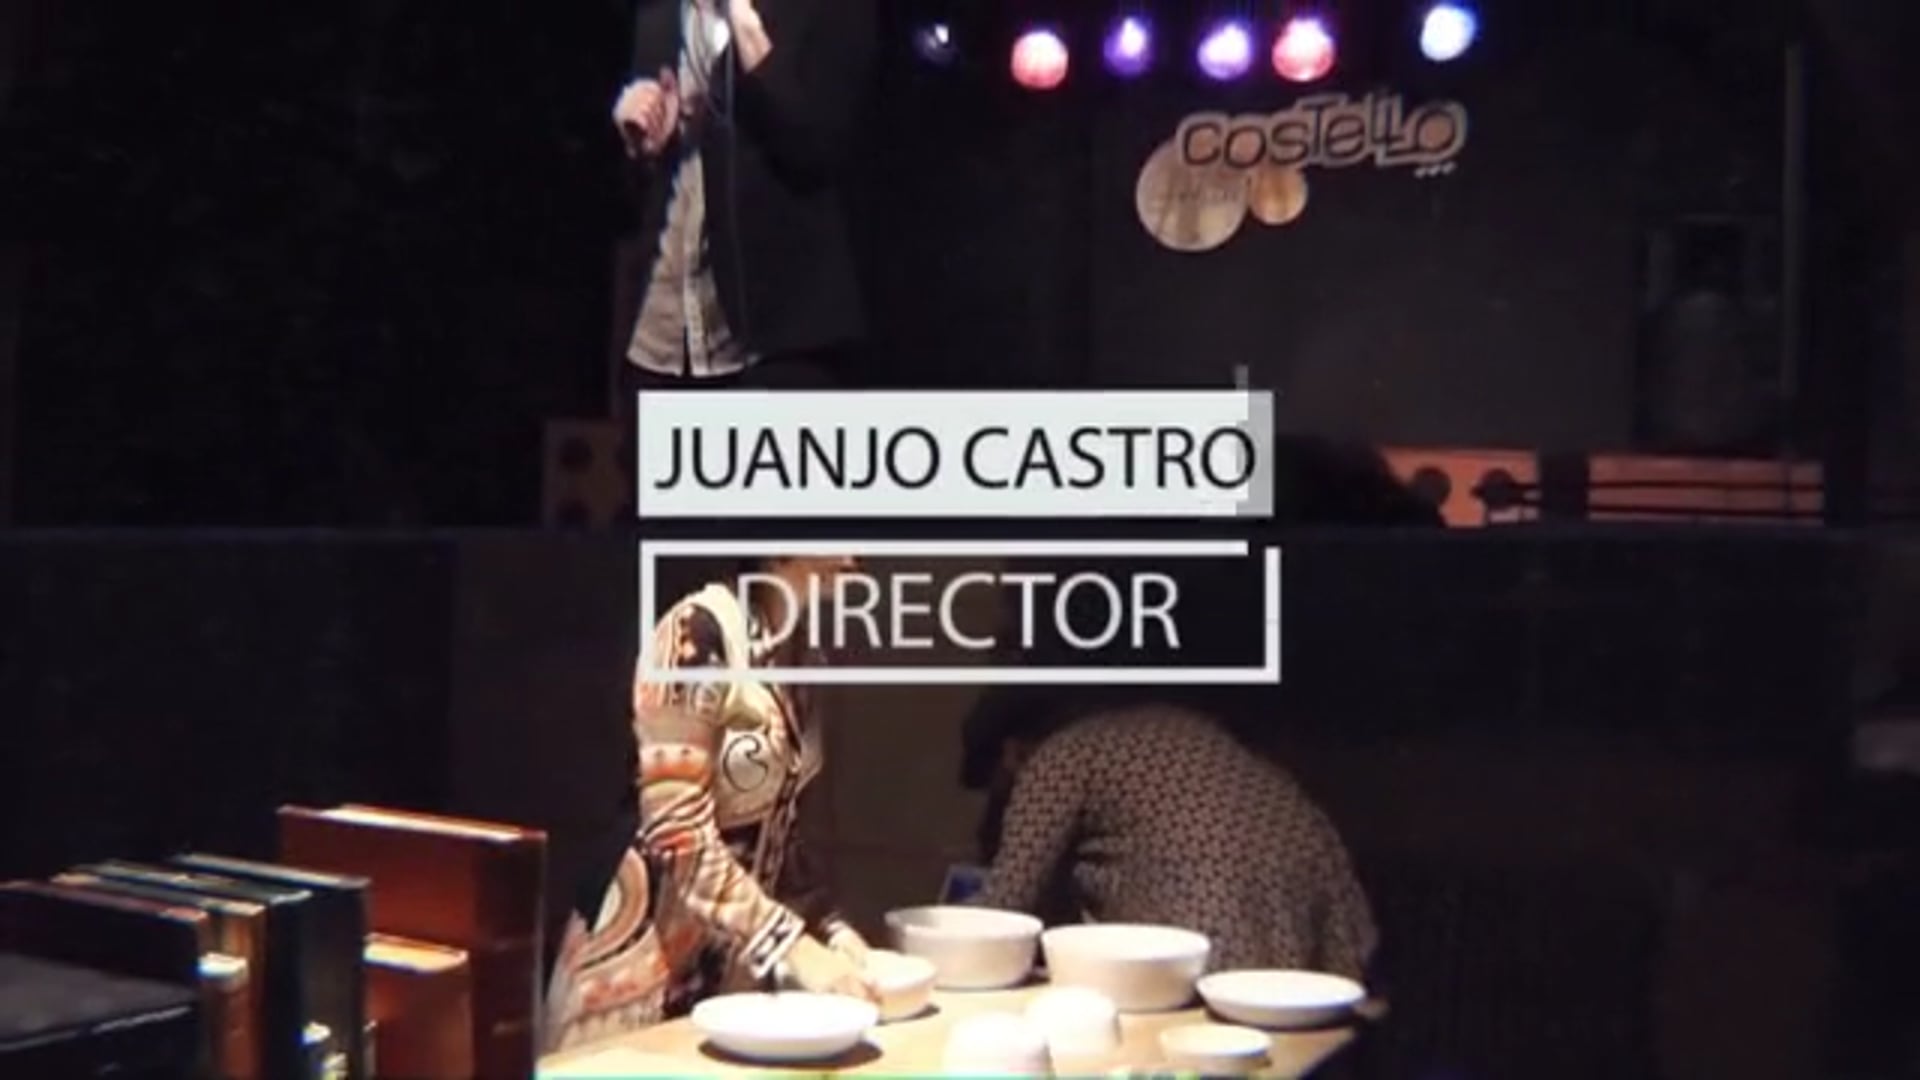 Promo Juanjo Castro Asesoría & Creatividad Audiovisual (Oct 15)